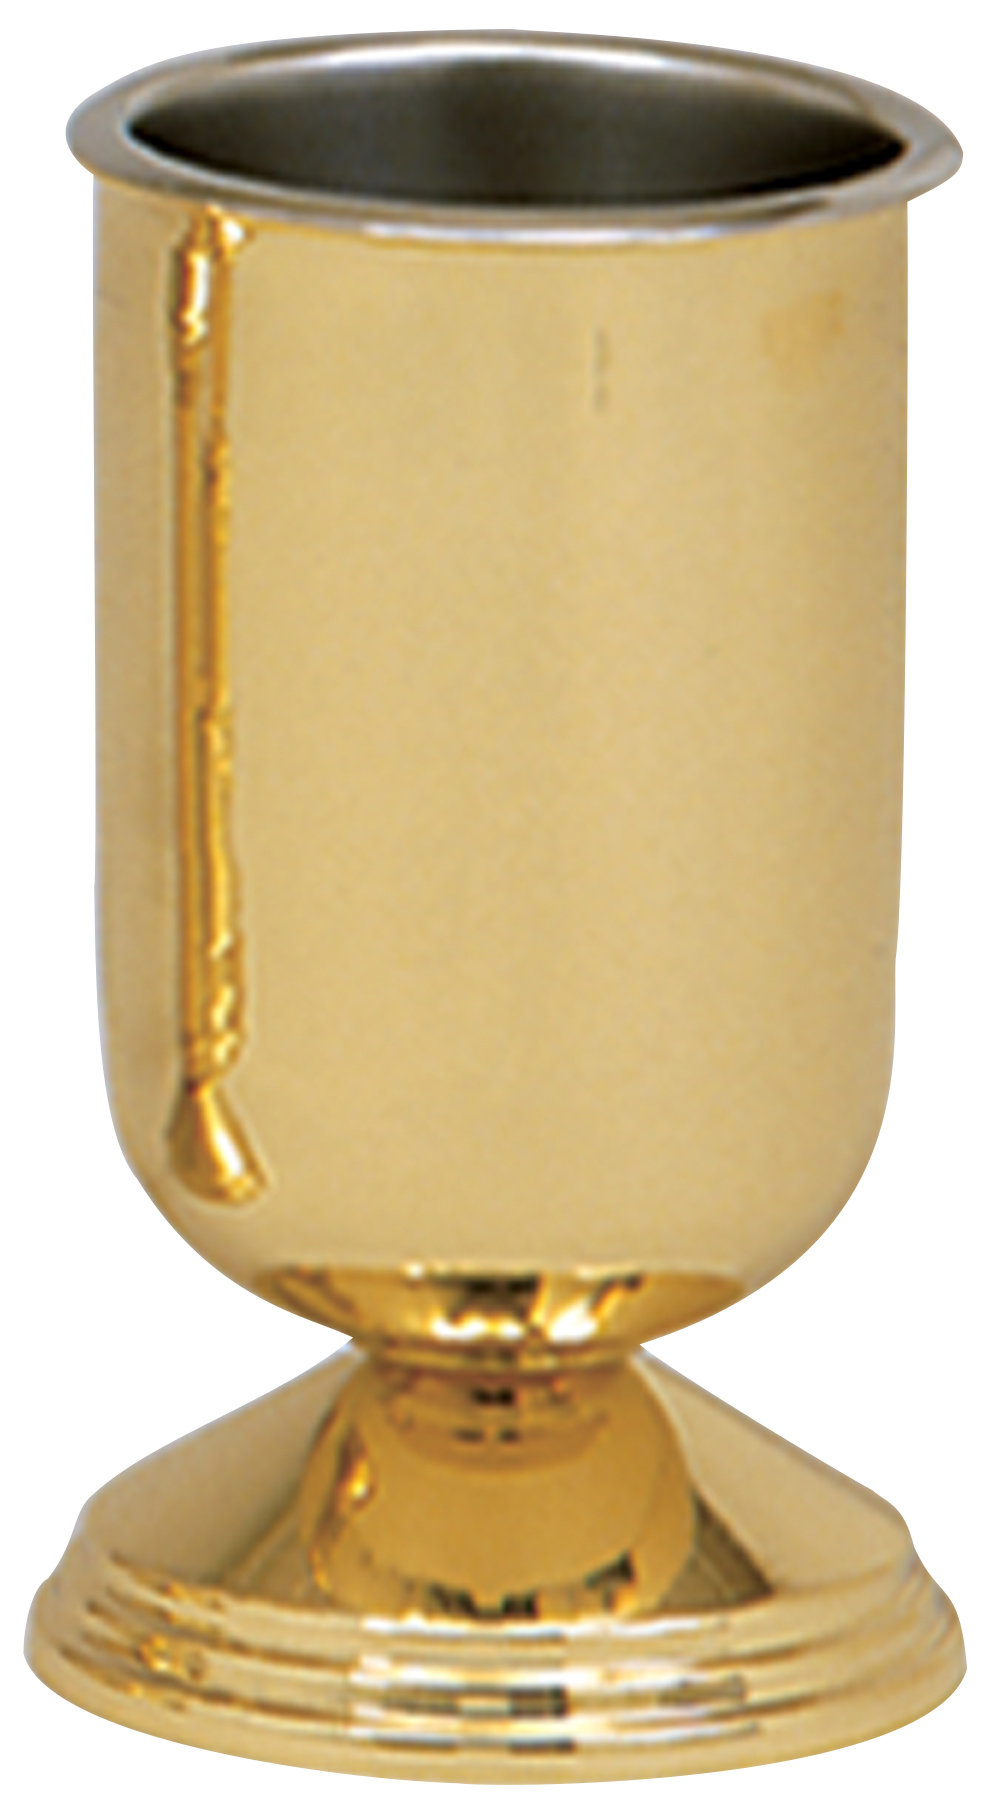 Altar Vase 9" Brass Stainless Steel Liner